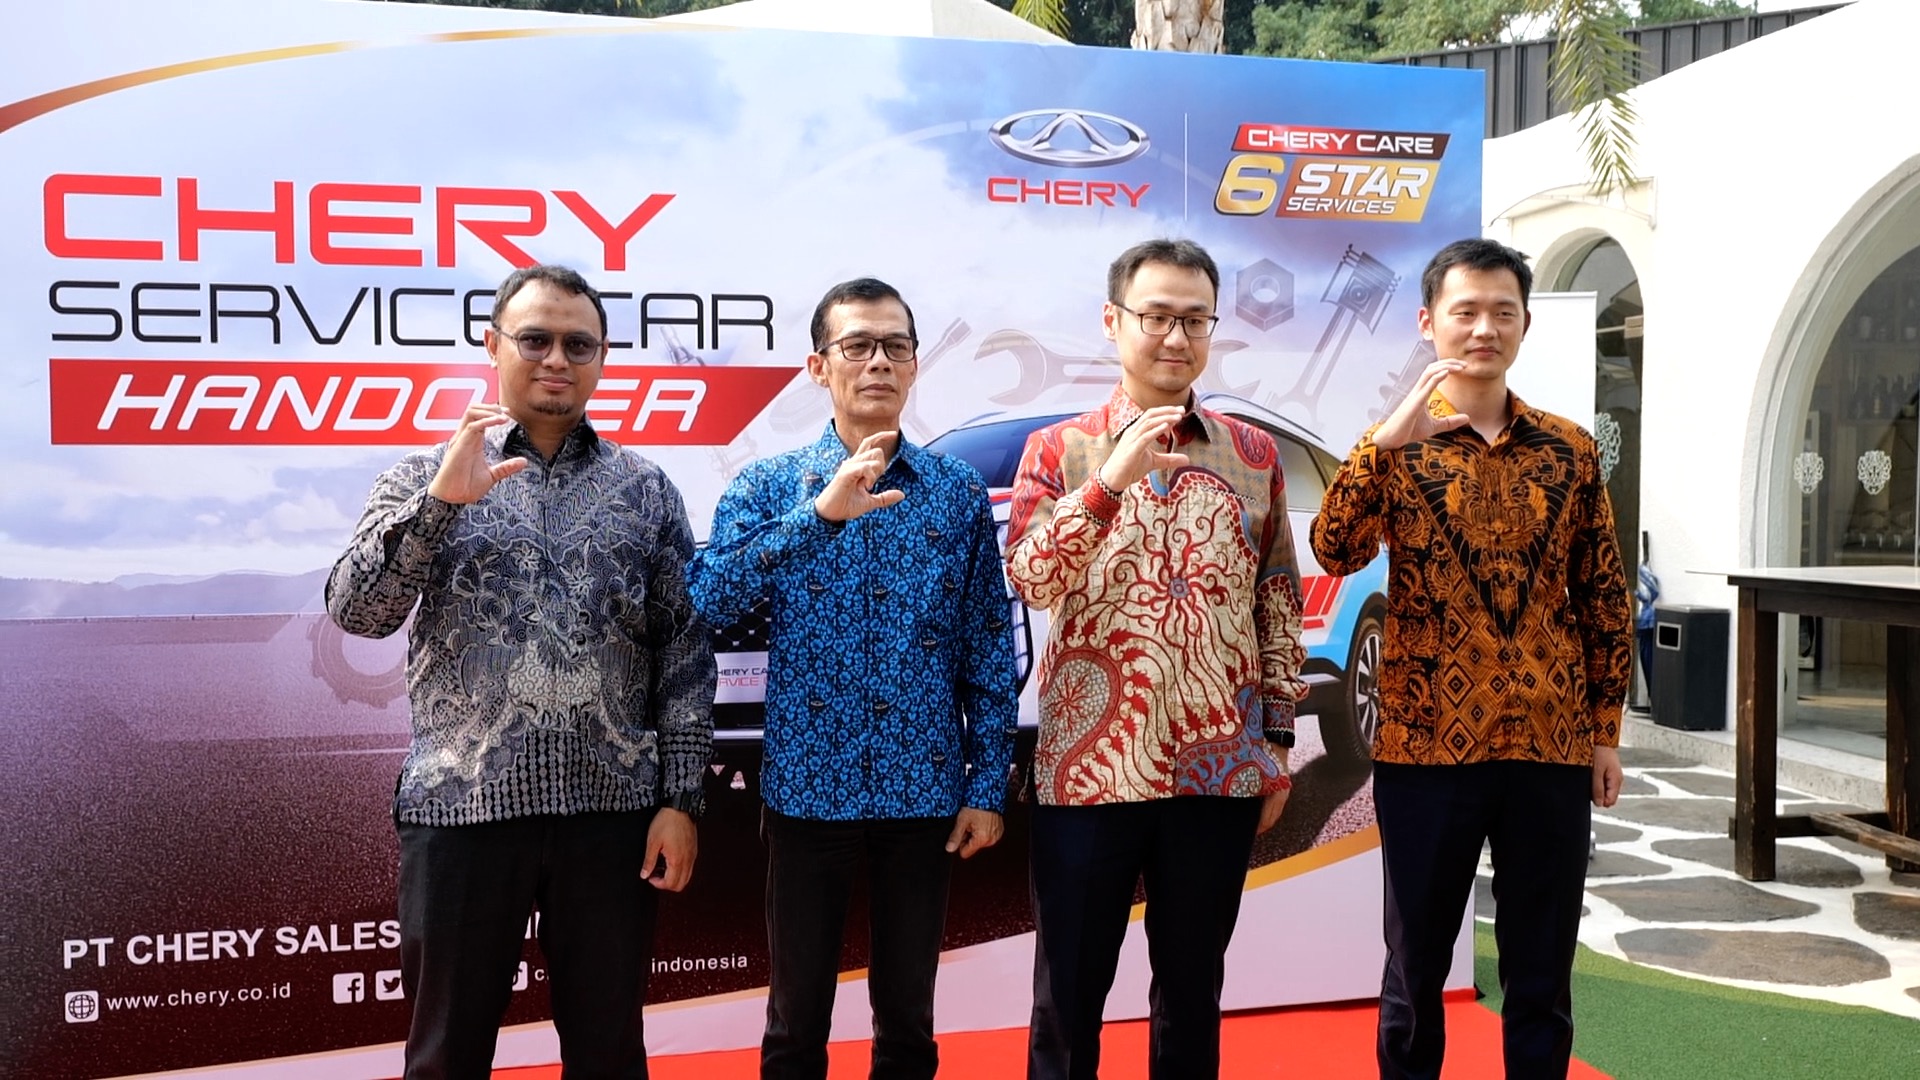 Chery Mulai Distribusikan Service Car ke Seluruh Jaringan Dealer 3S Chery di Indonesia